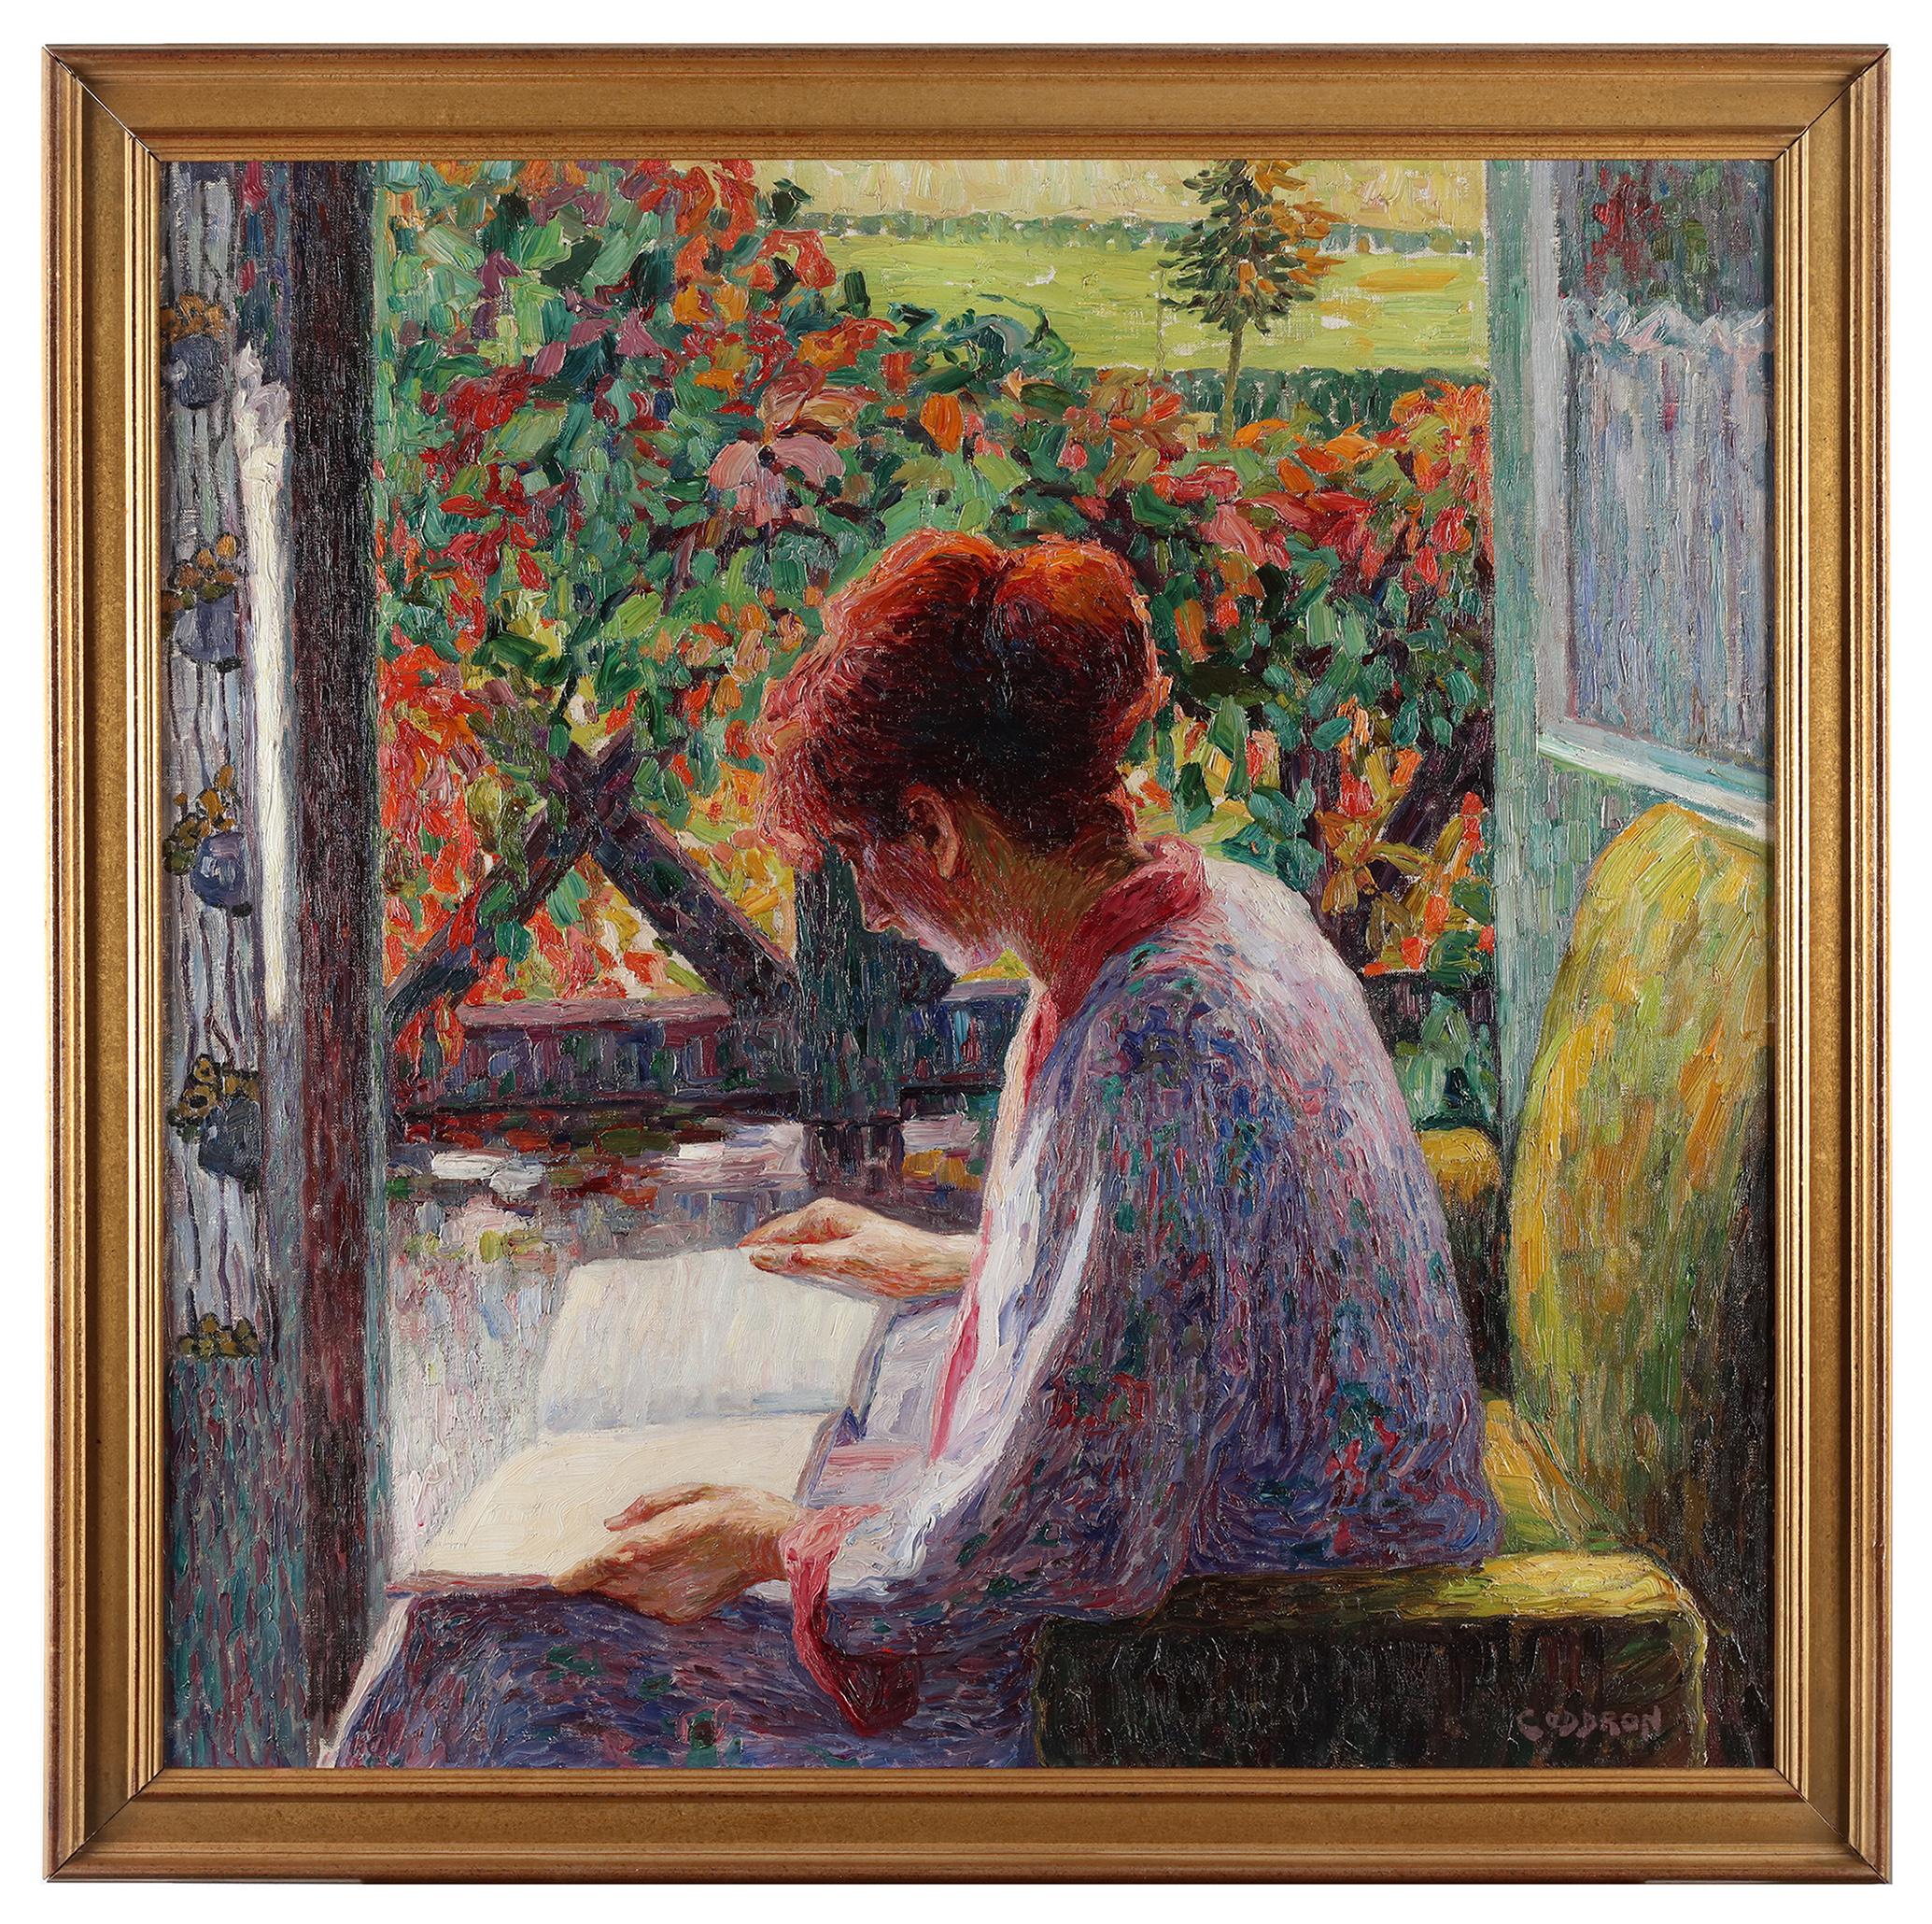 A woman reading on her balcony - Oscar Coddron (1881-1960) 1